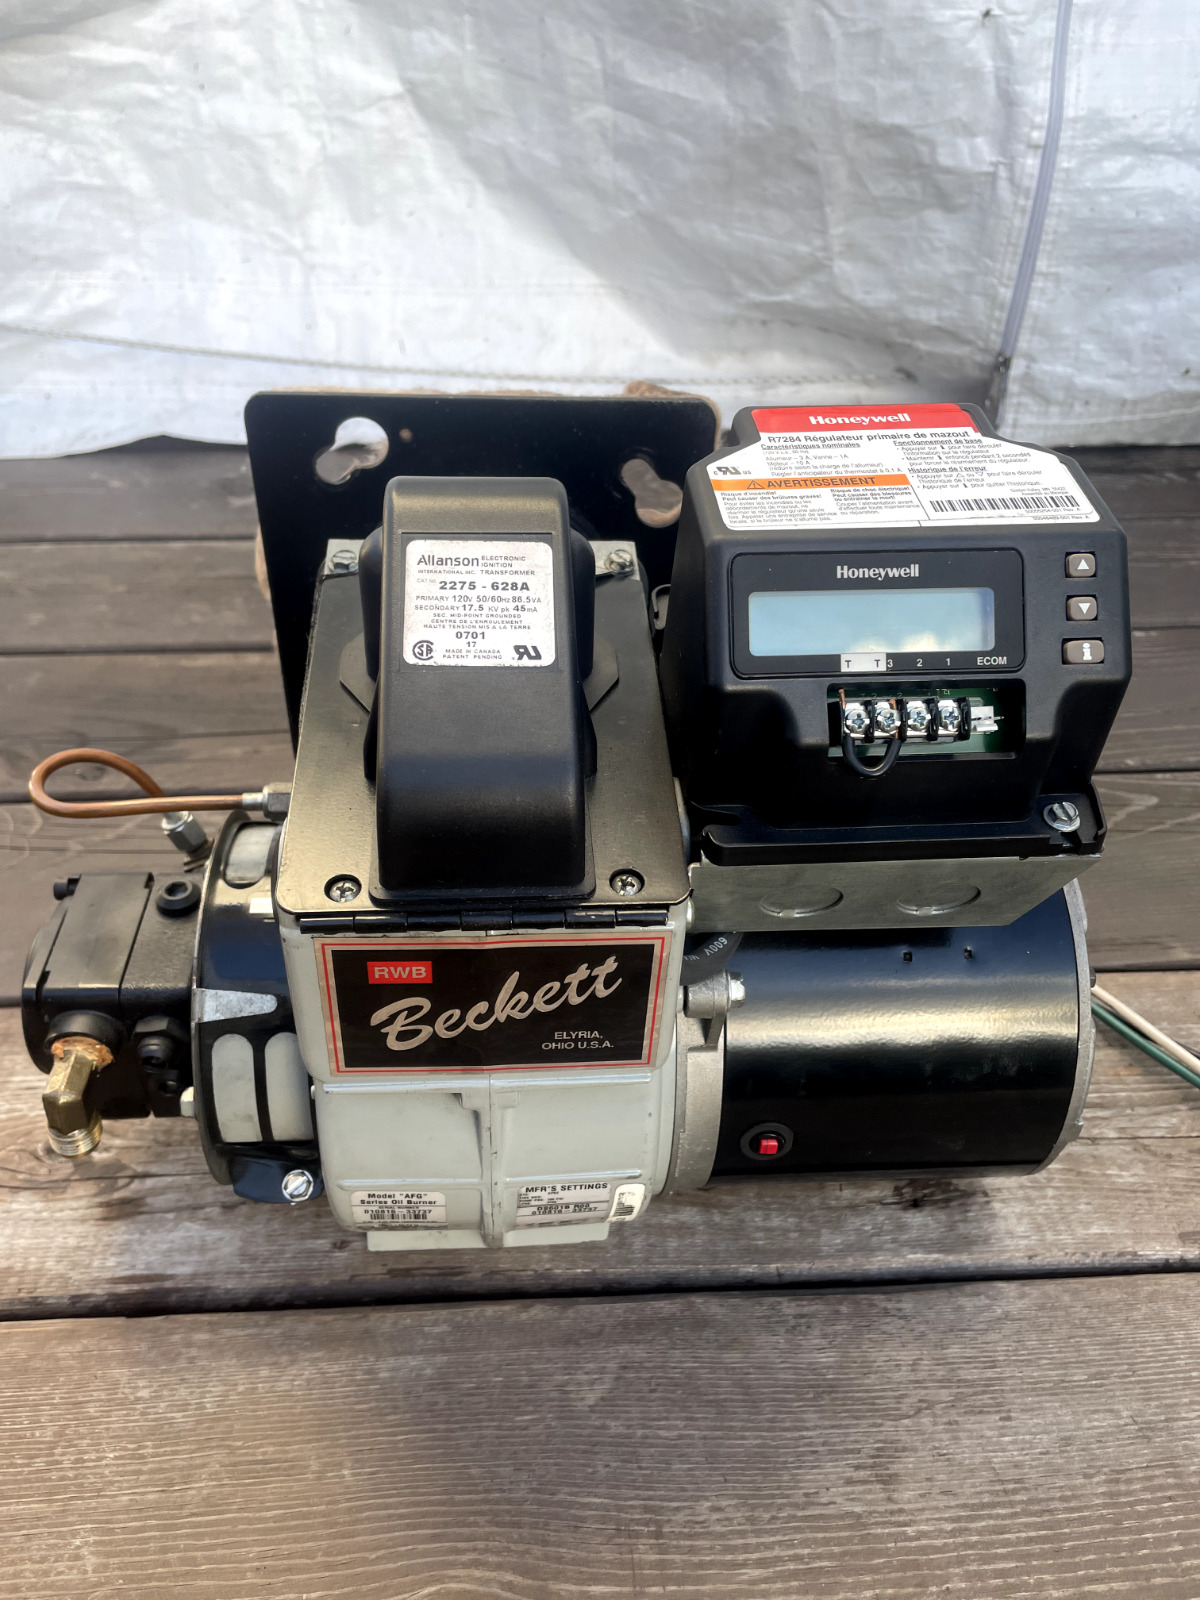 Beckett oil burner Afg digital model + thermostat and ignition